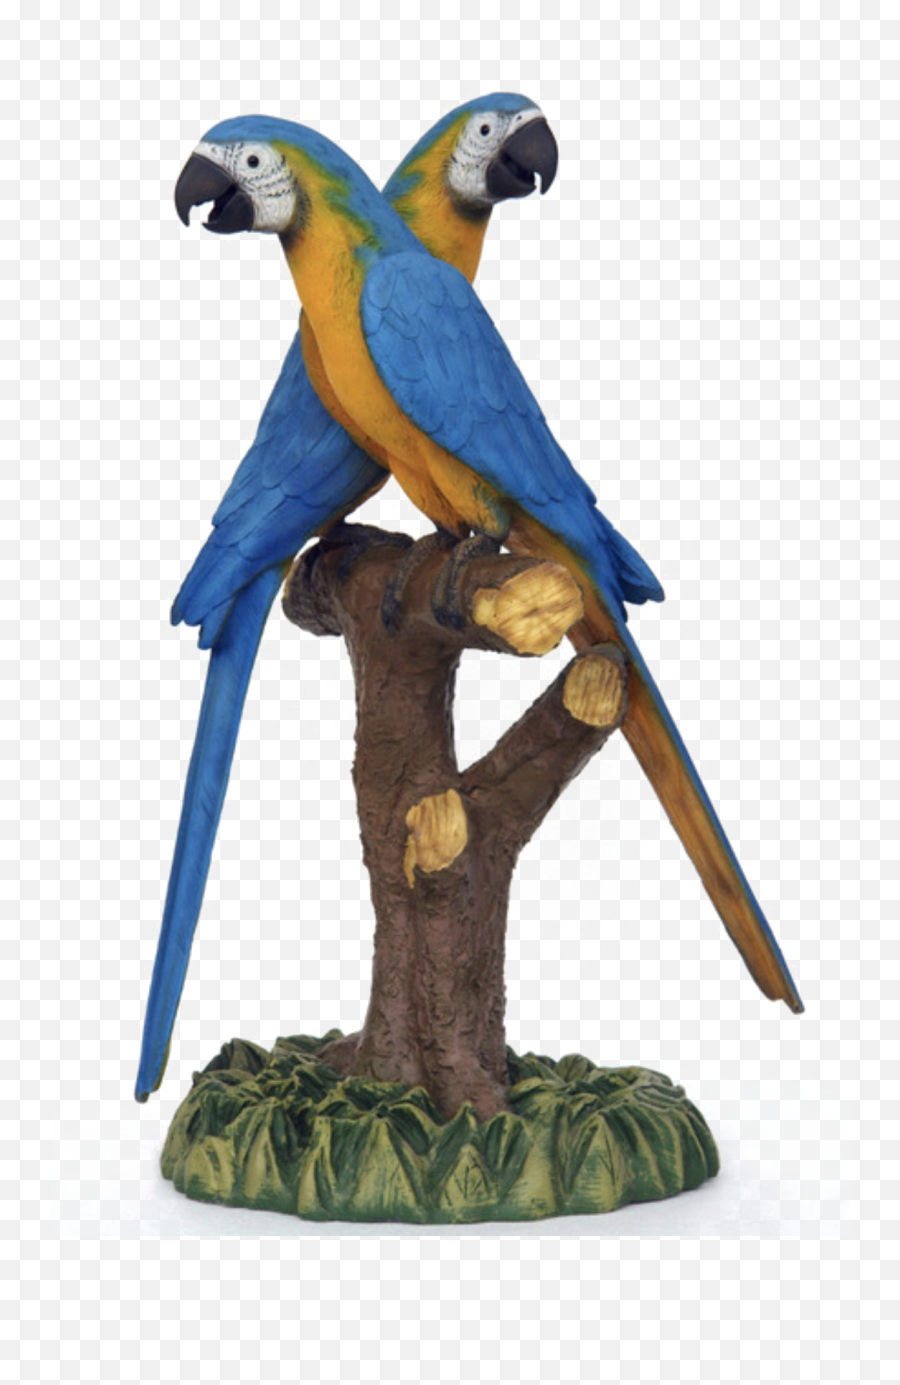 Blue Parrot Transparent Images Png Arts - Parrots,Parrot Transparent